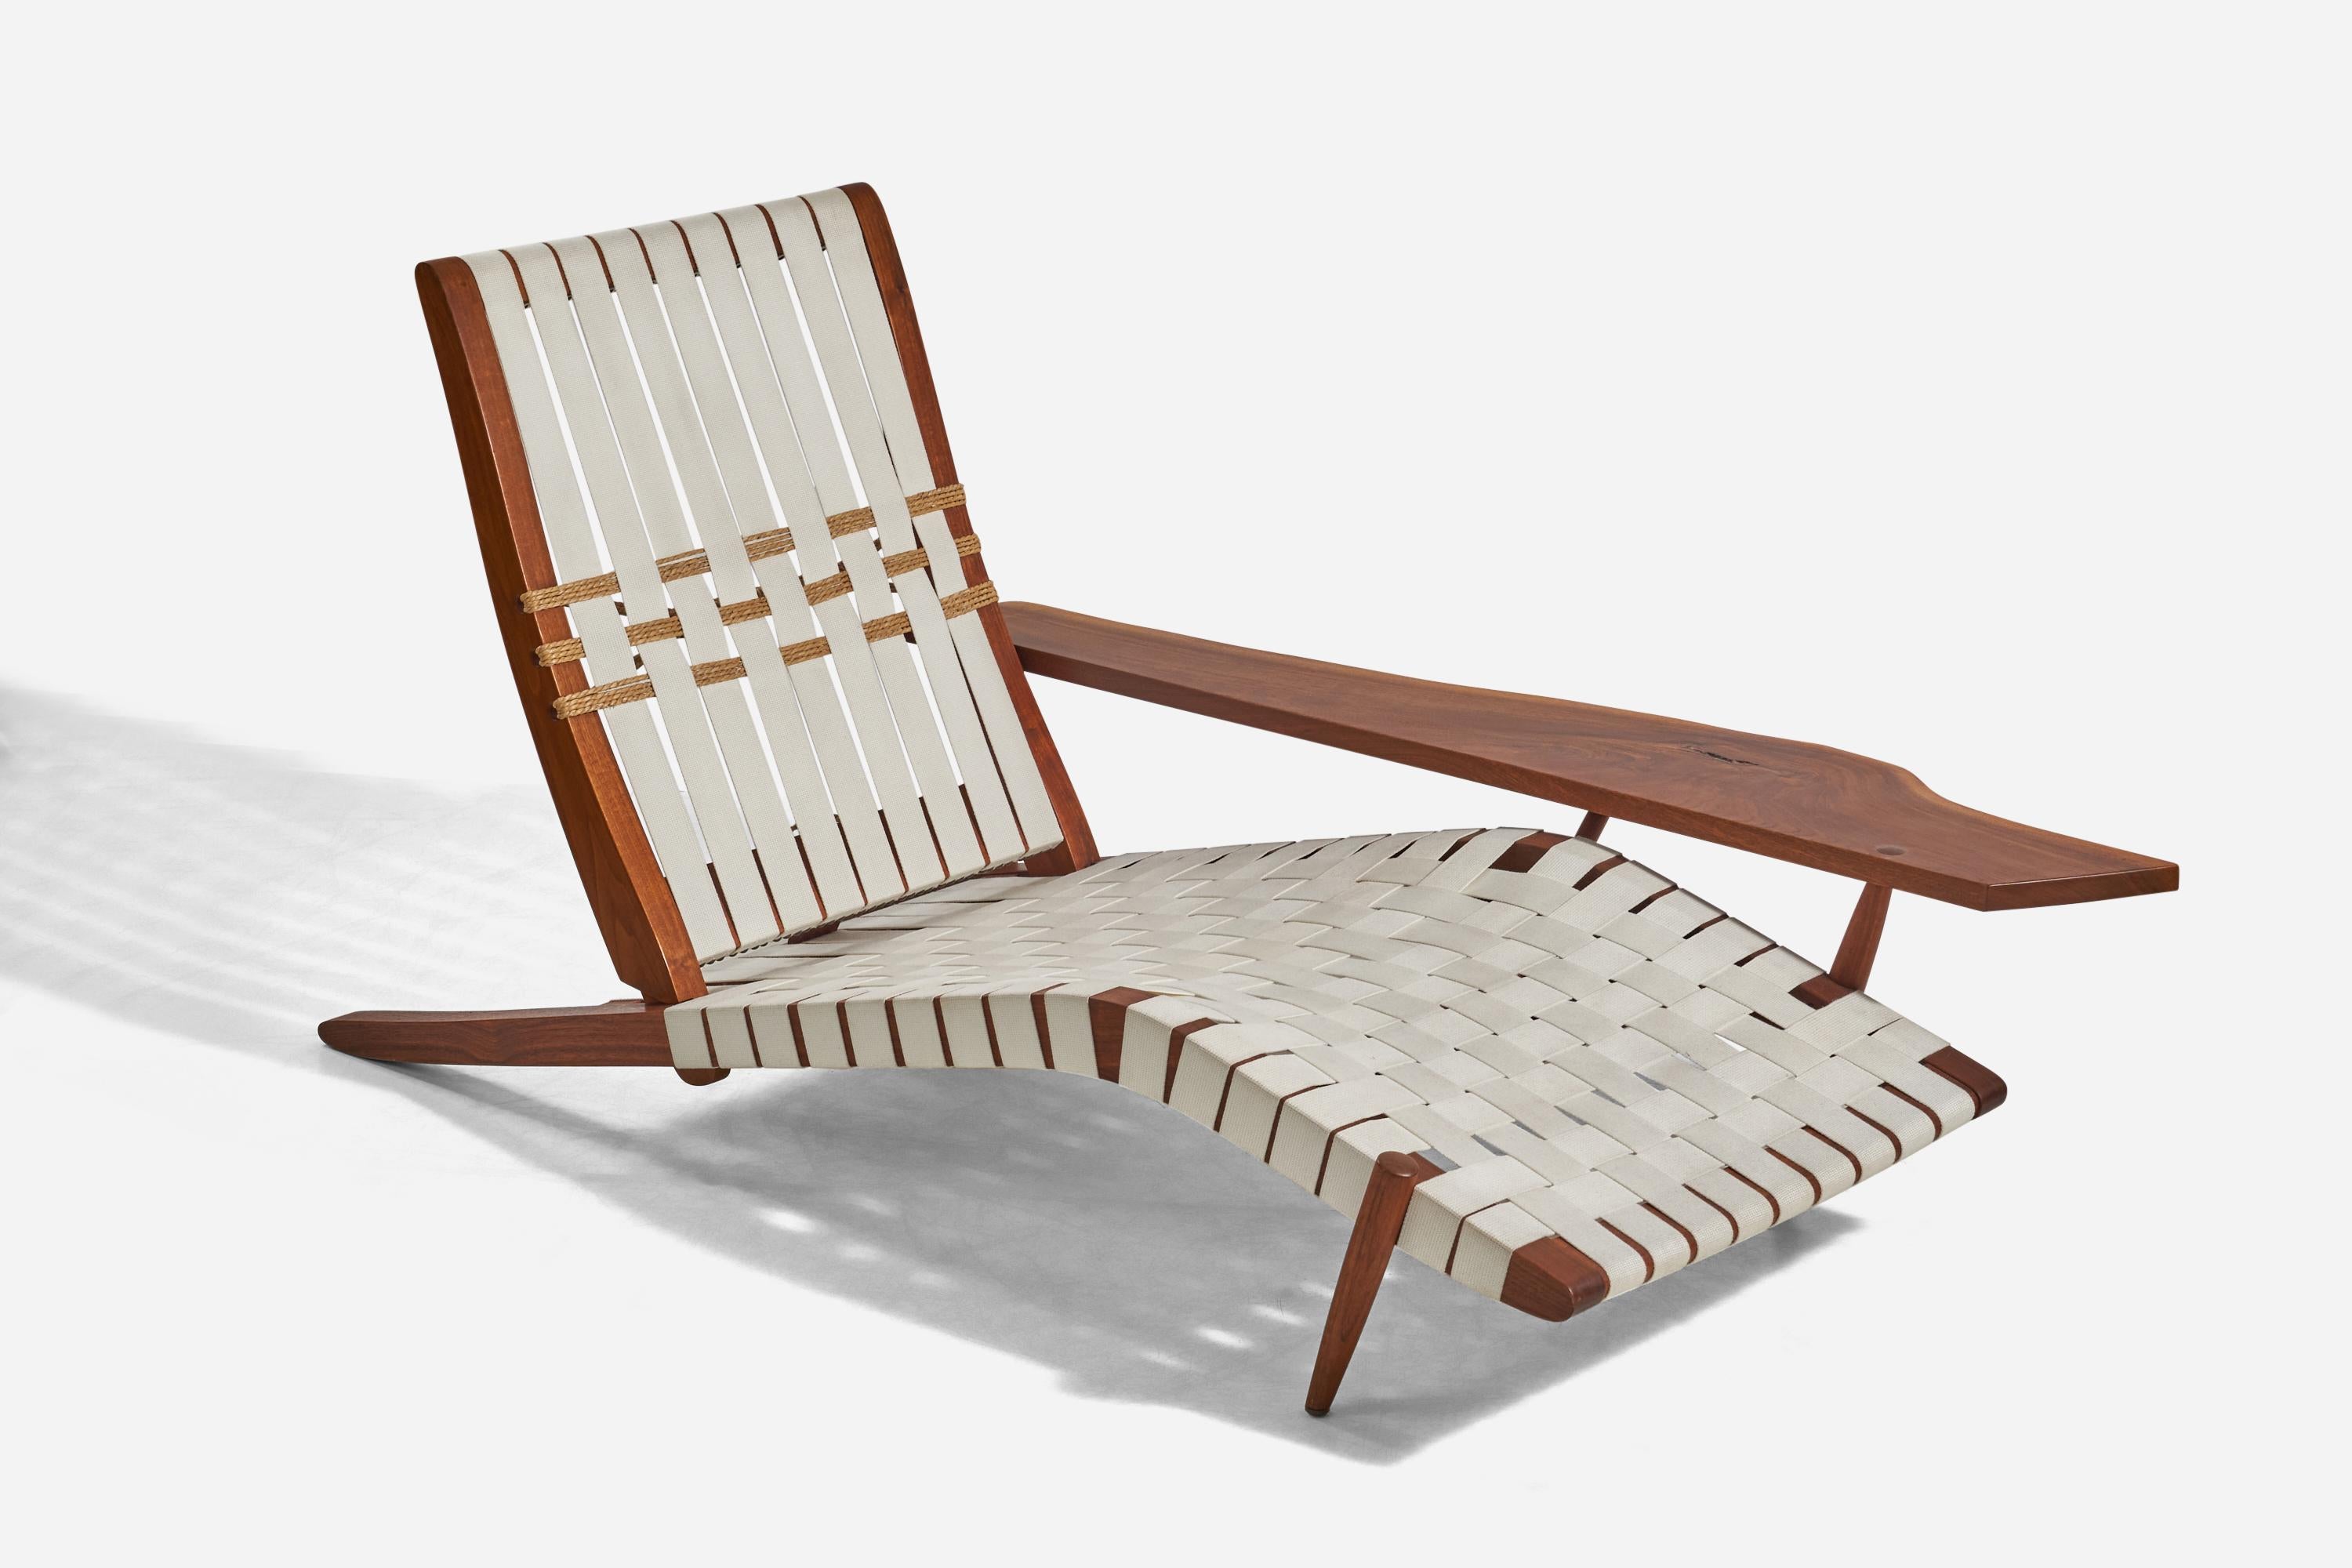 Langer Stuhl aus amerikanischem Schwarznussholz und Baumwollgewebe, entworfen und hergestellt von George Nakashima, USA, 1960er Jahre.

Mit einer großen, für Nakashima typischen Armlehne mit Noppendetails und freier Kante.